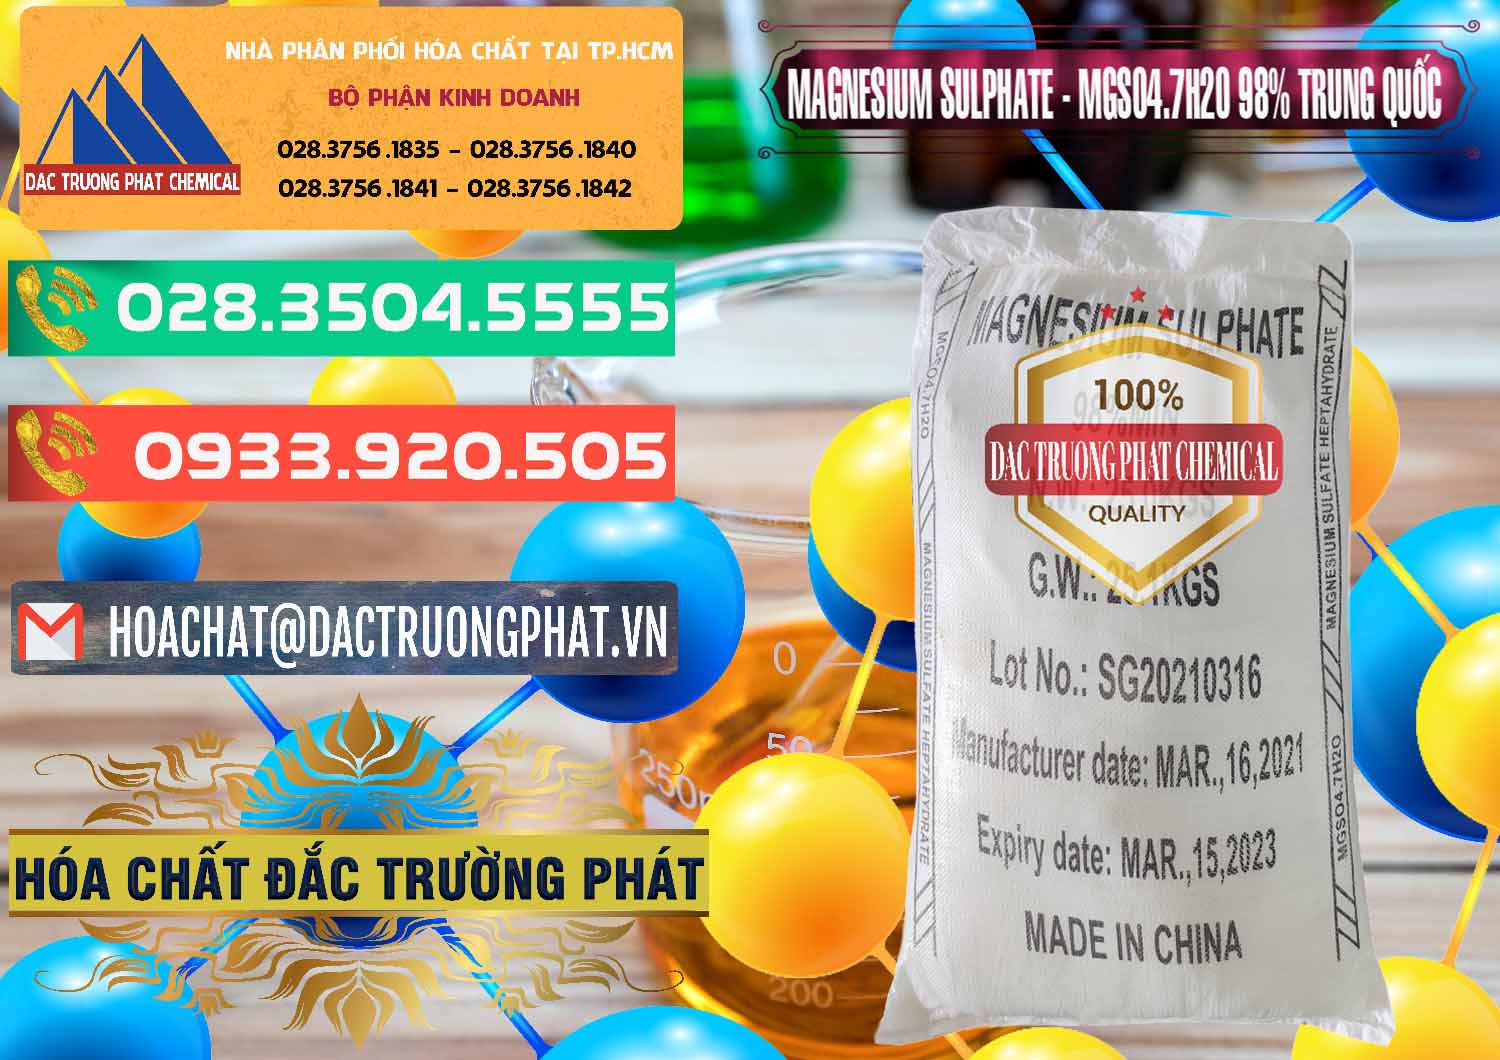 Cty chuyên phân phối và bán MGSO4.7H2O – Magnesium Sulphate 98% Trung Quốc China - 0229 - Bán & cung cấp hóa chất tại TP.HCM - congtyhoachat.com.vn